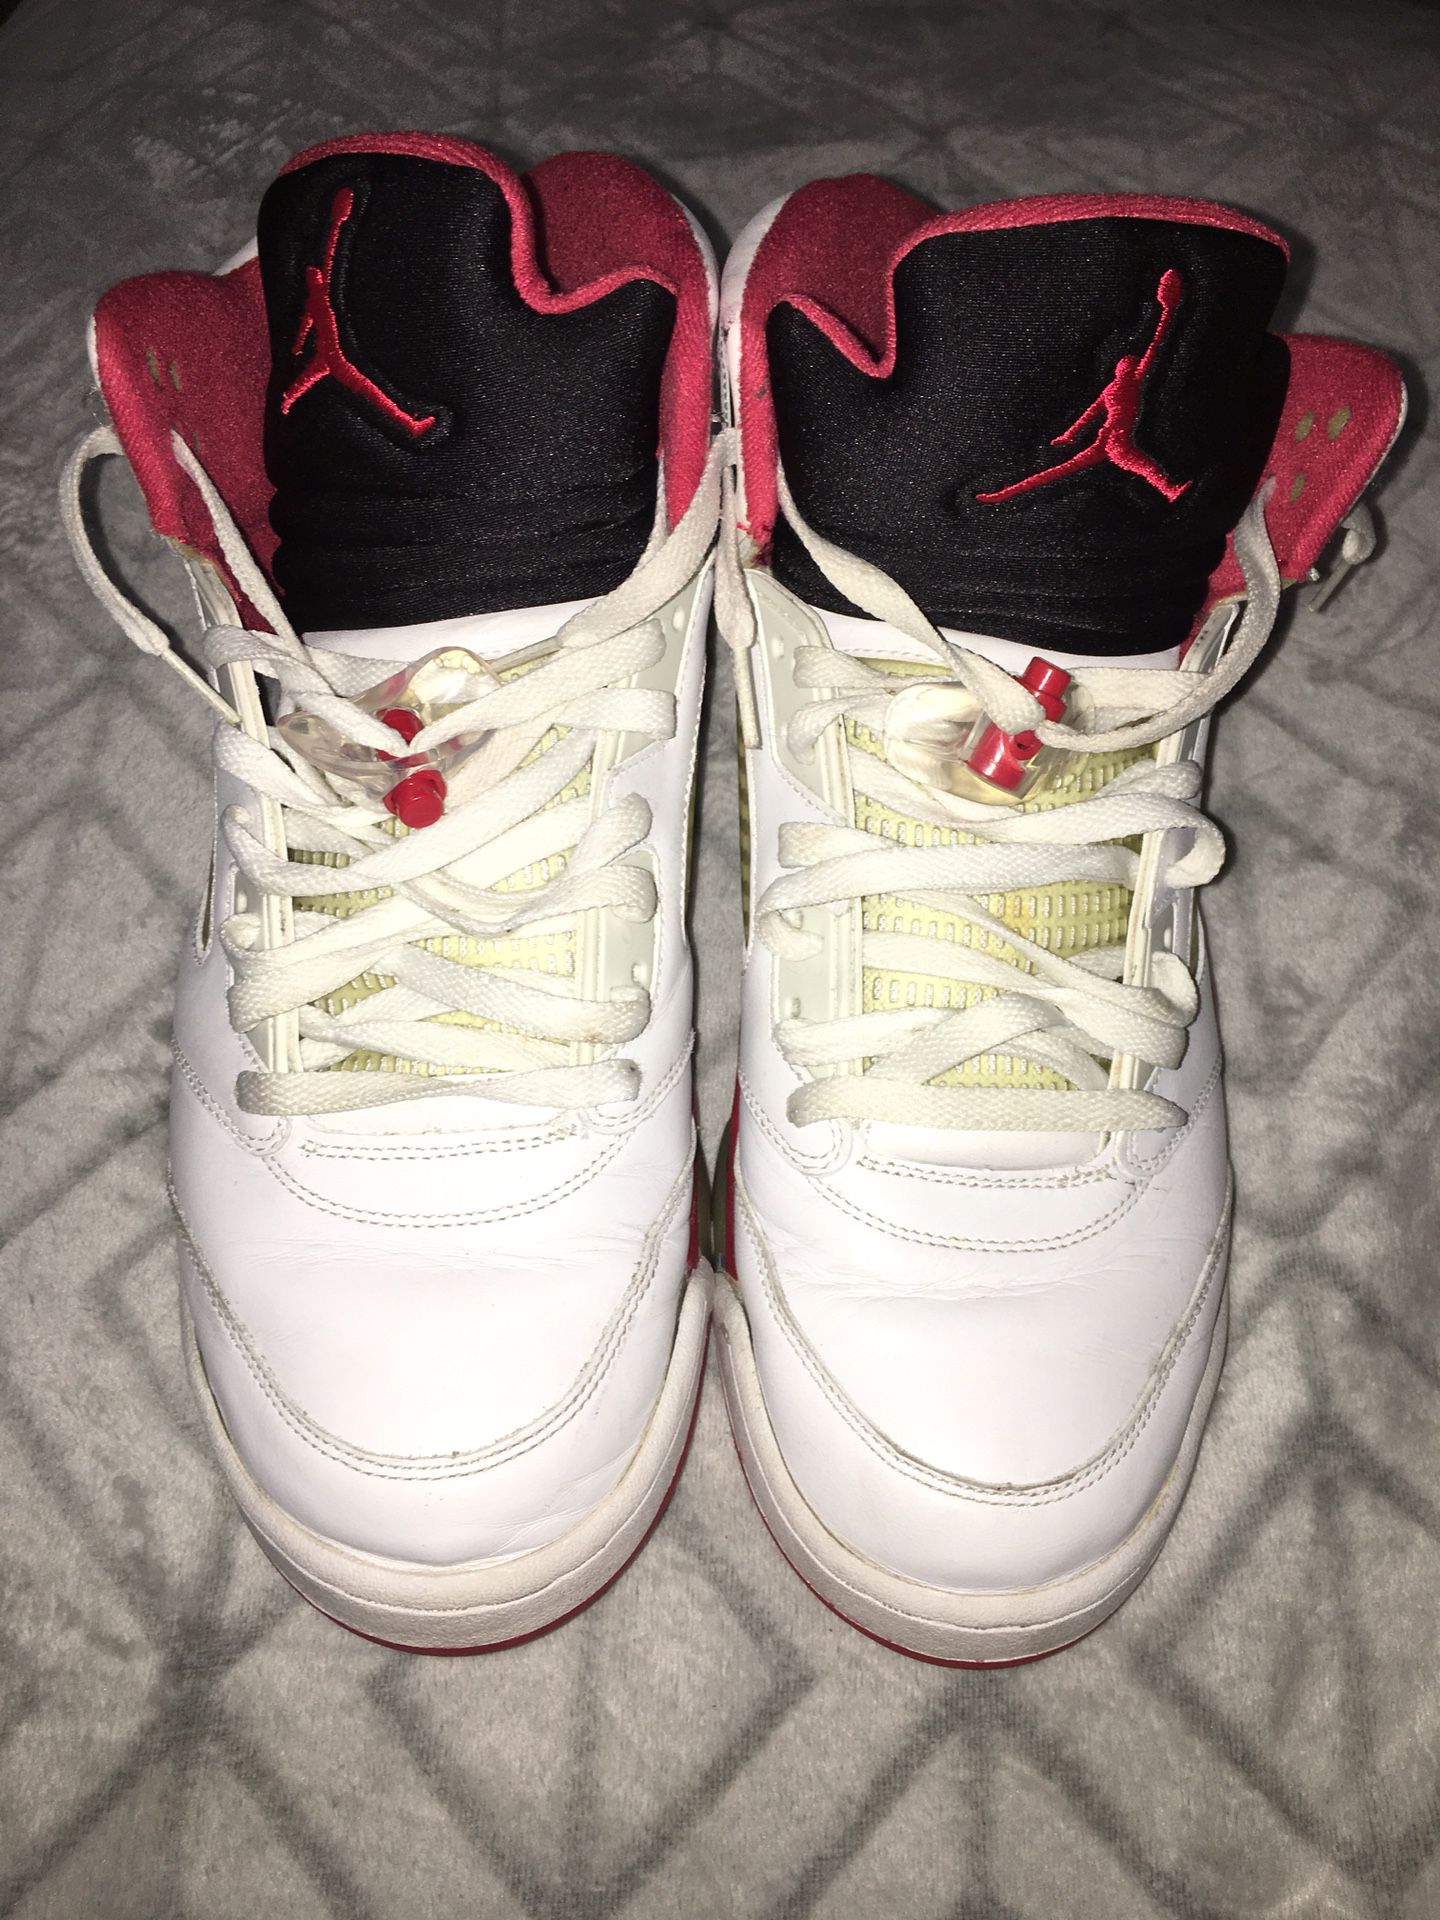 Jordan 5 Fire Red 🔥 Size 13